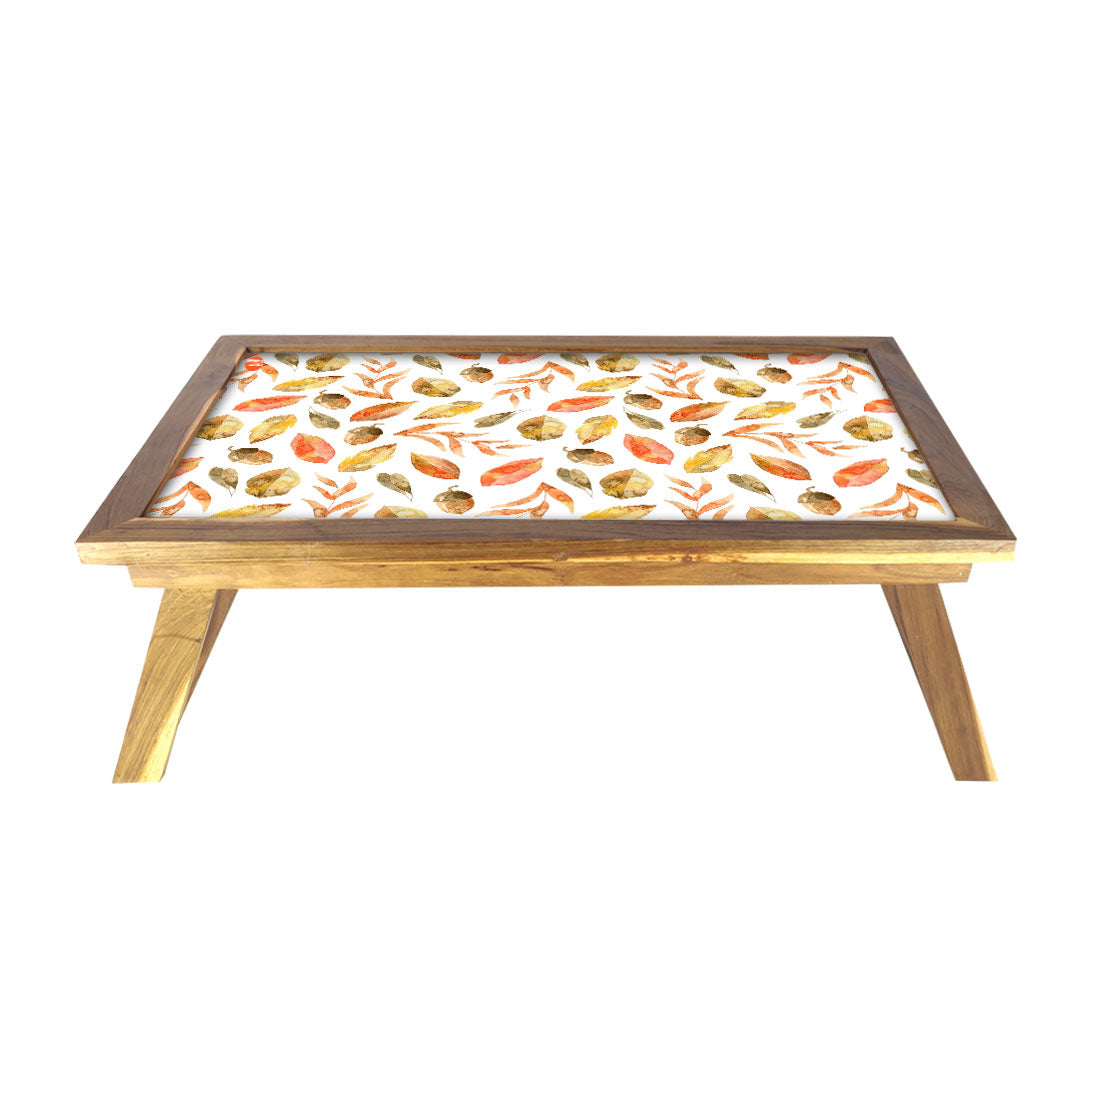 Designer Wooden Lap Tray for Eating Breakfast Table - Orange Leaf Nutcase